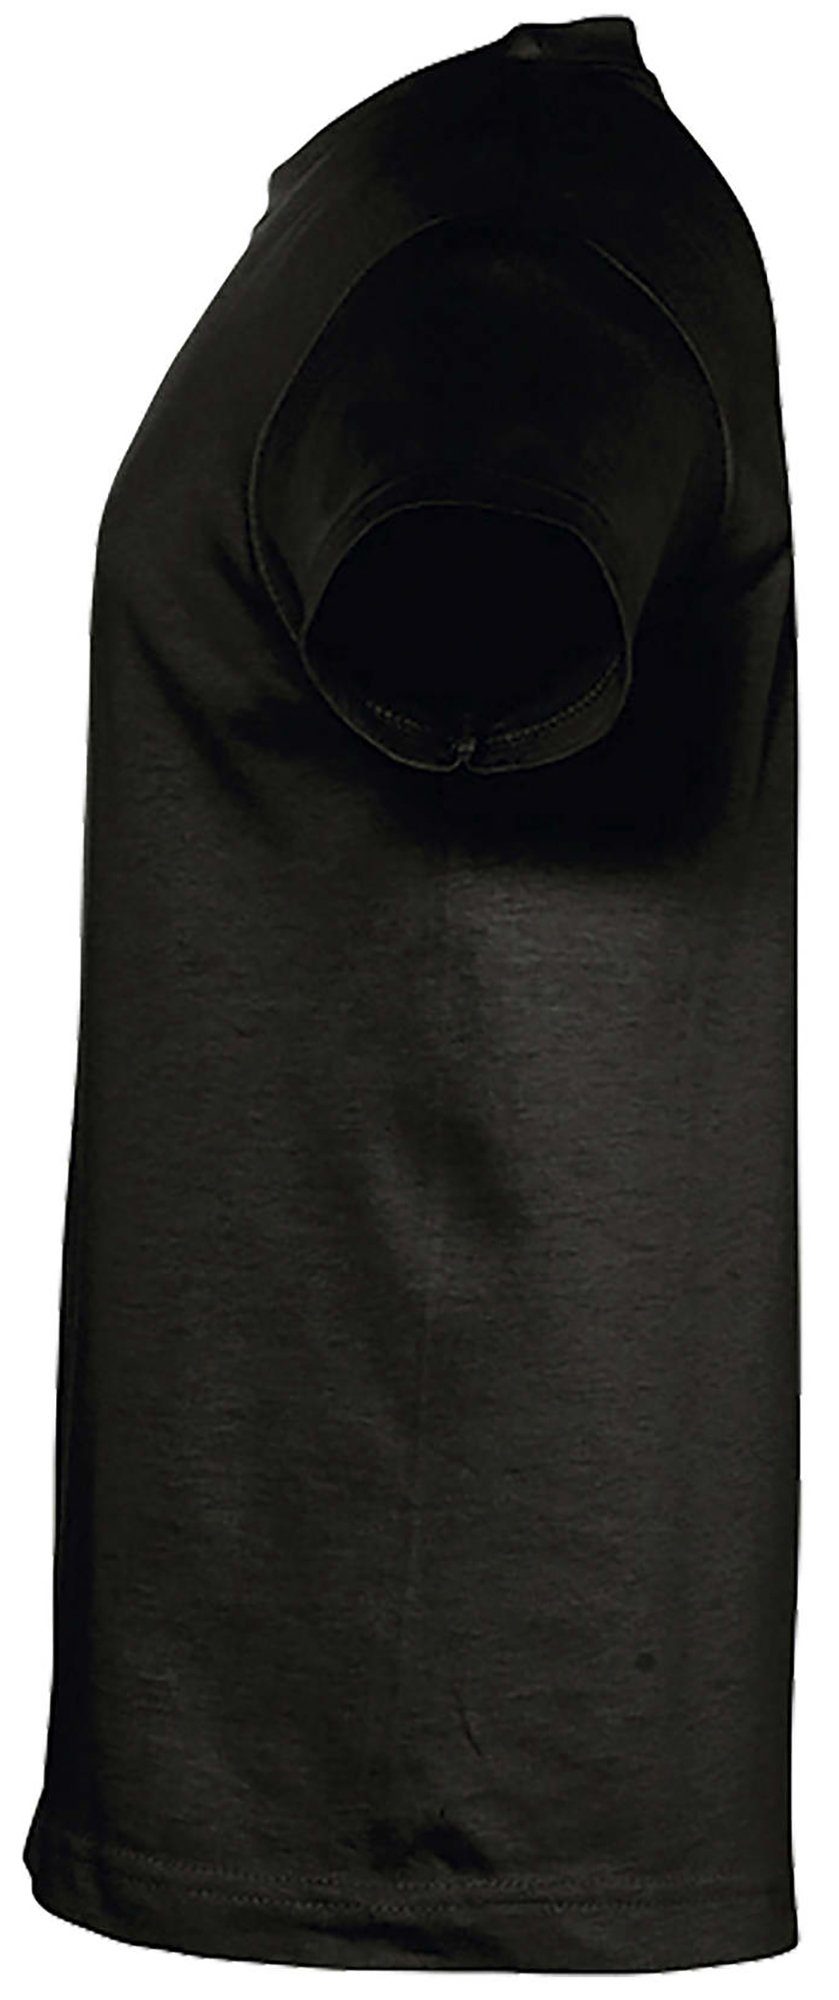 Mädchen Baumwollshirt T-Shirt Aufdruck, MyDesign24 schwarz Pferden bedrucktes Print-Shirt mit 3 i141 mit